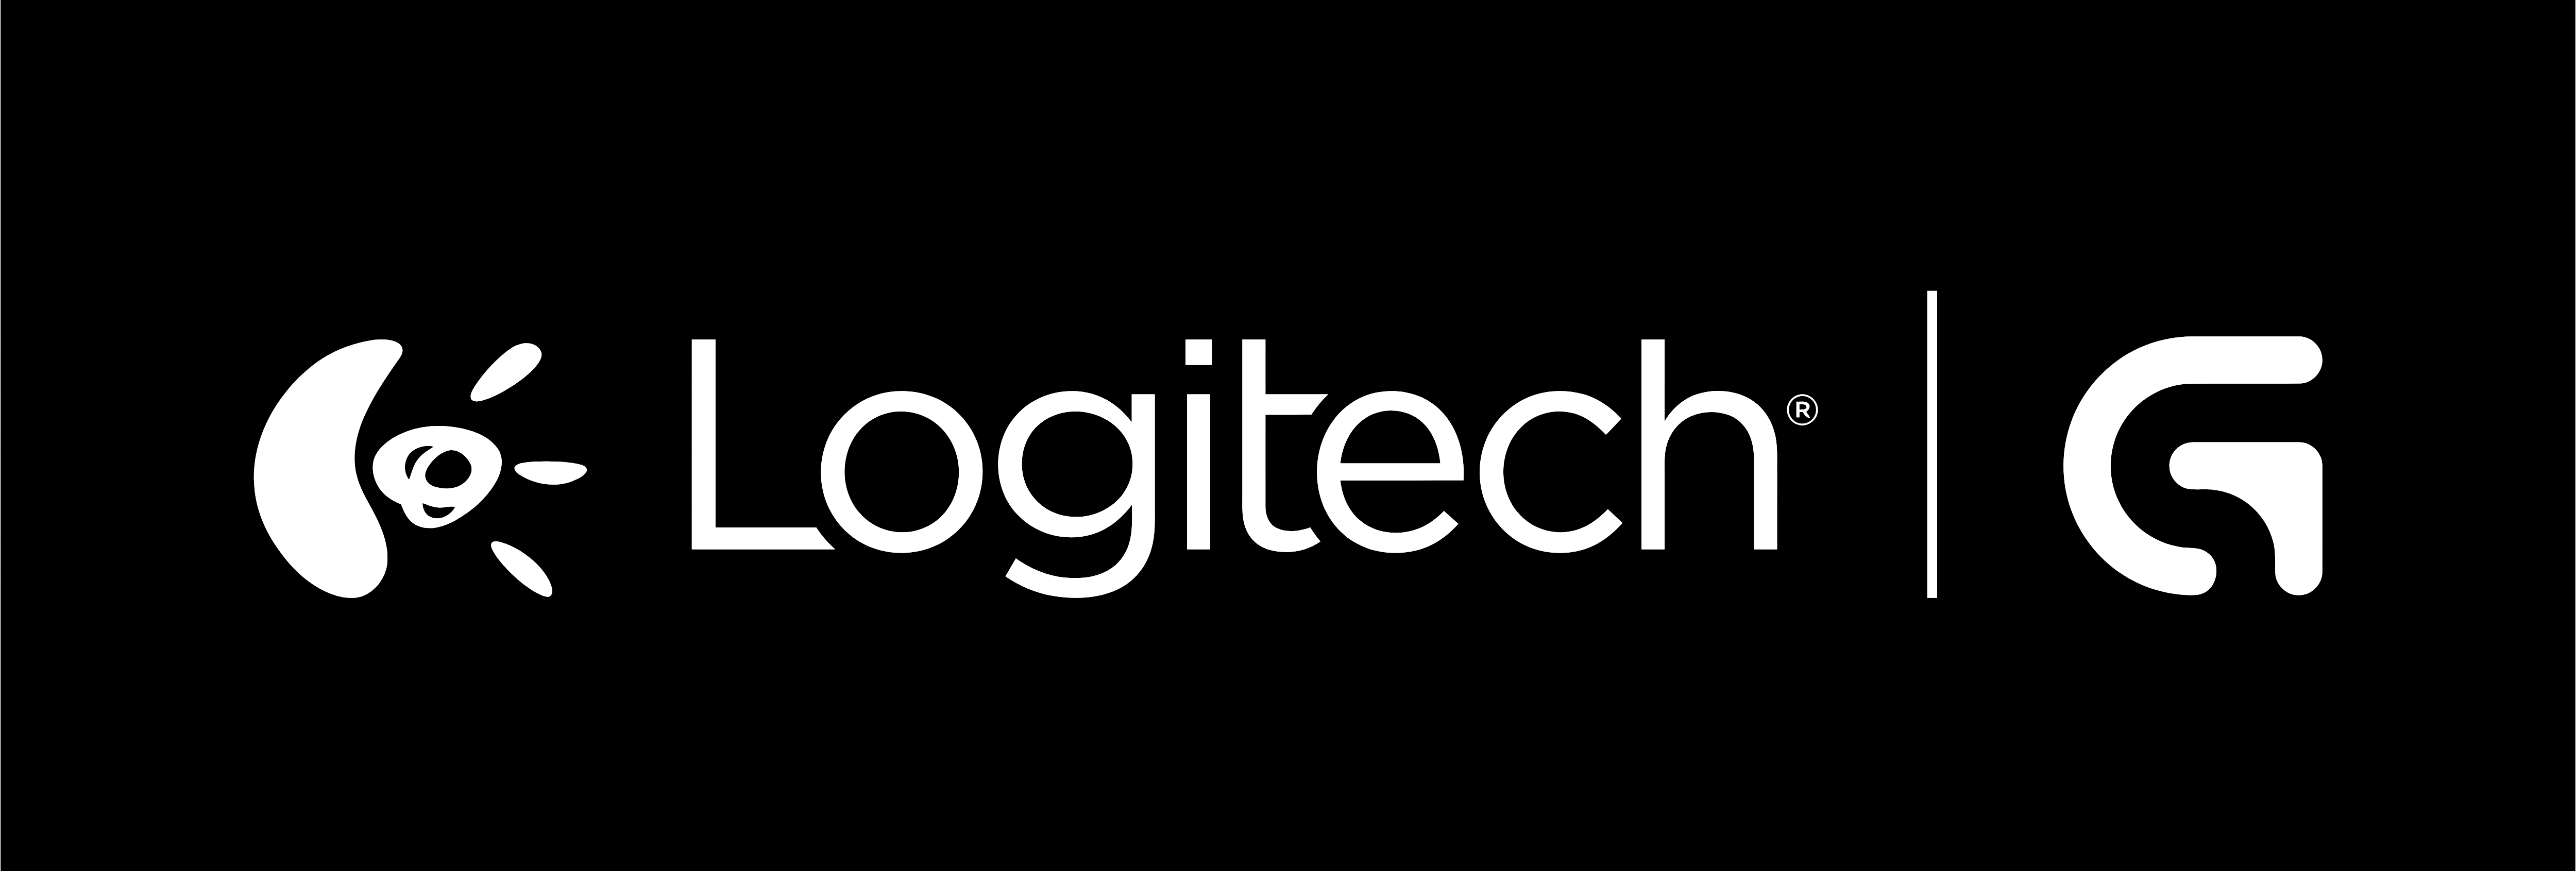 Logitech Logos Download